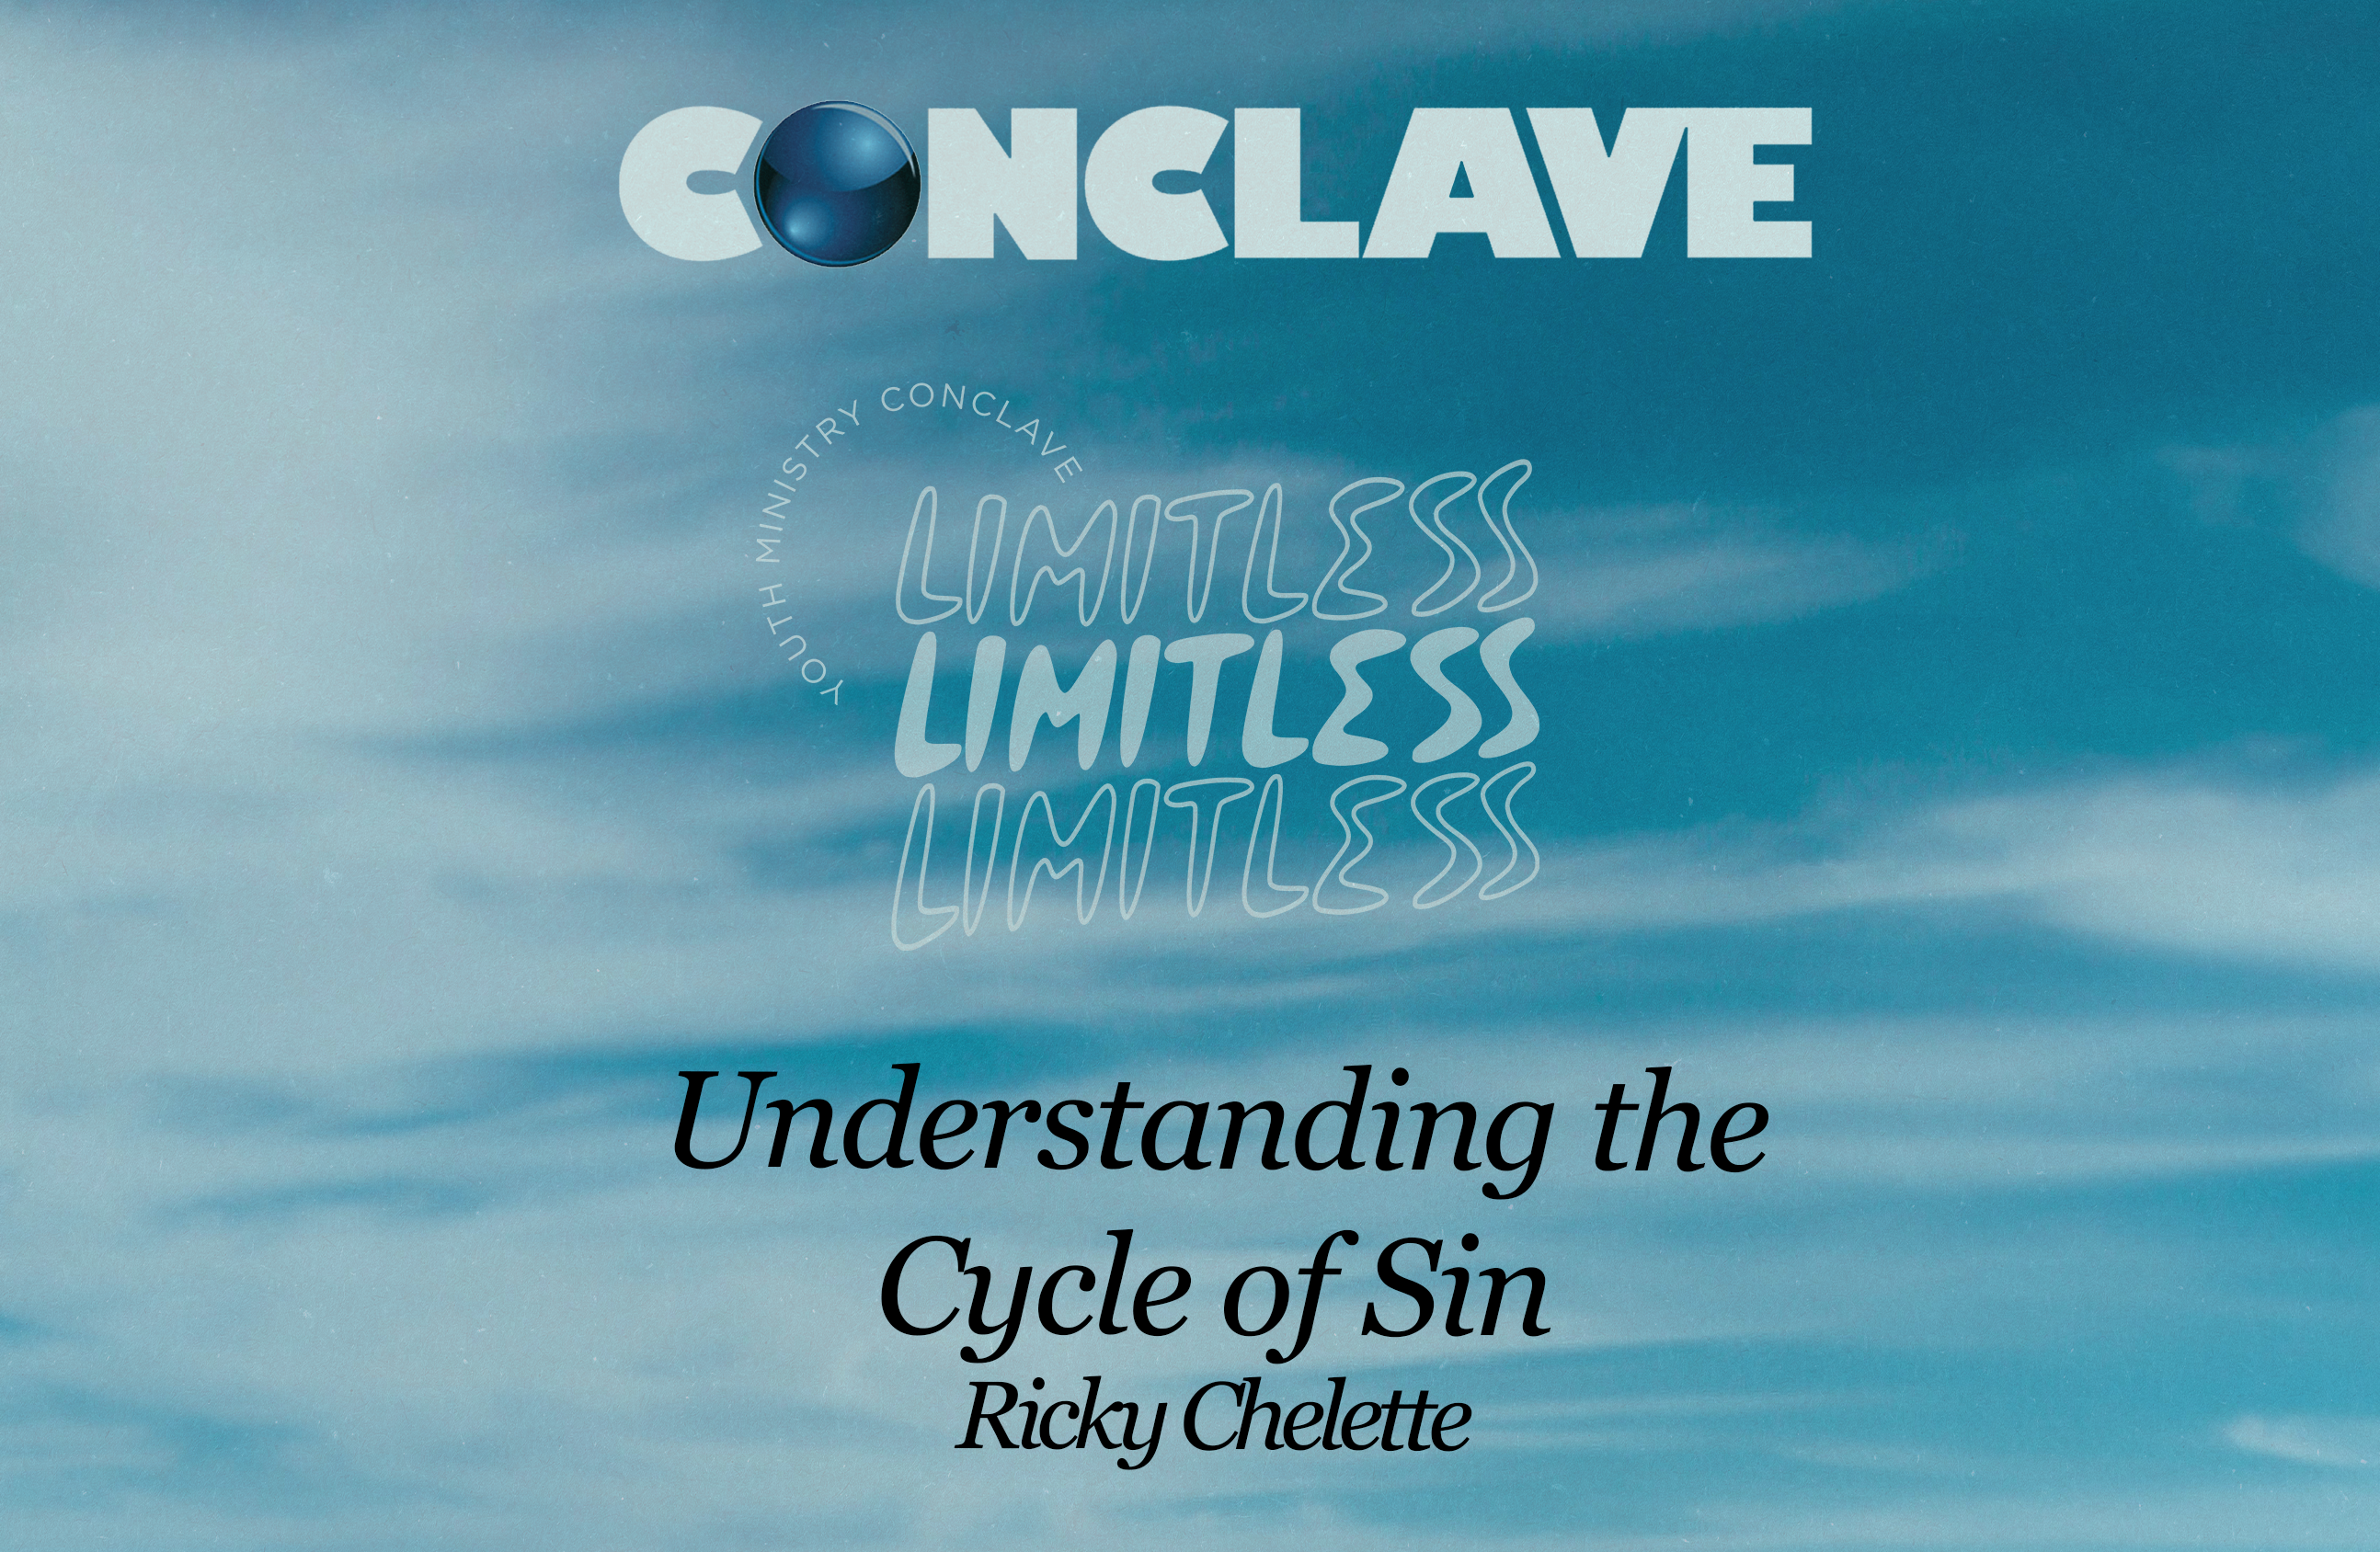 UnderstandingTheCycle